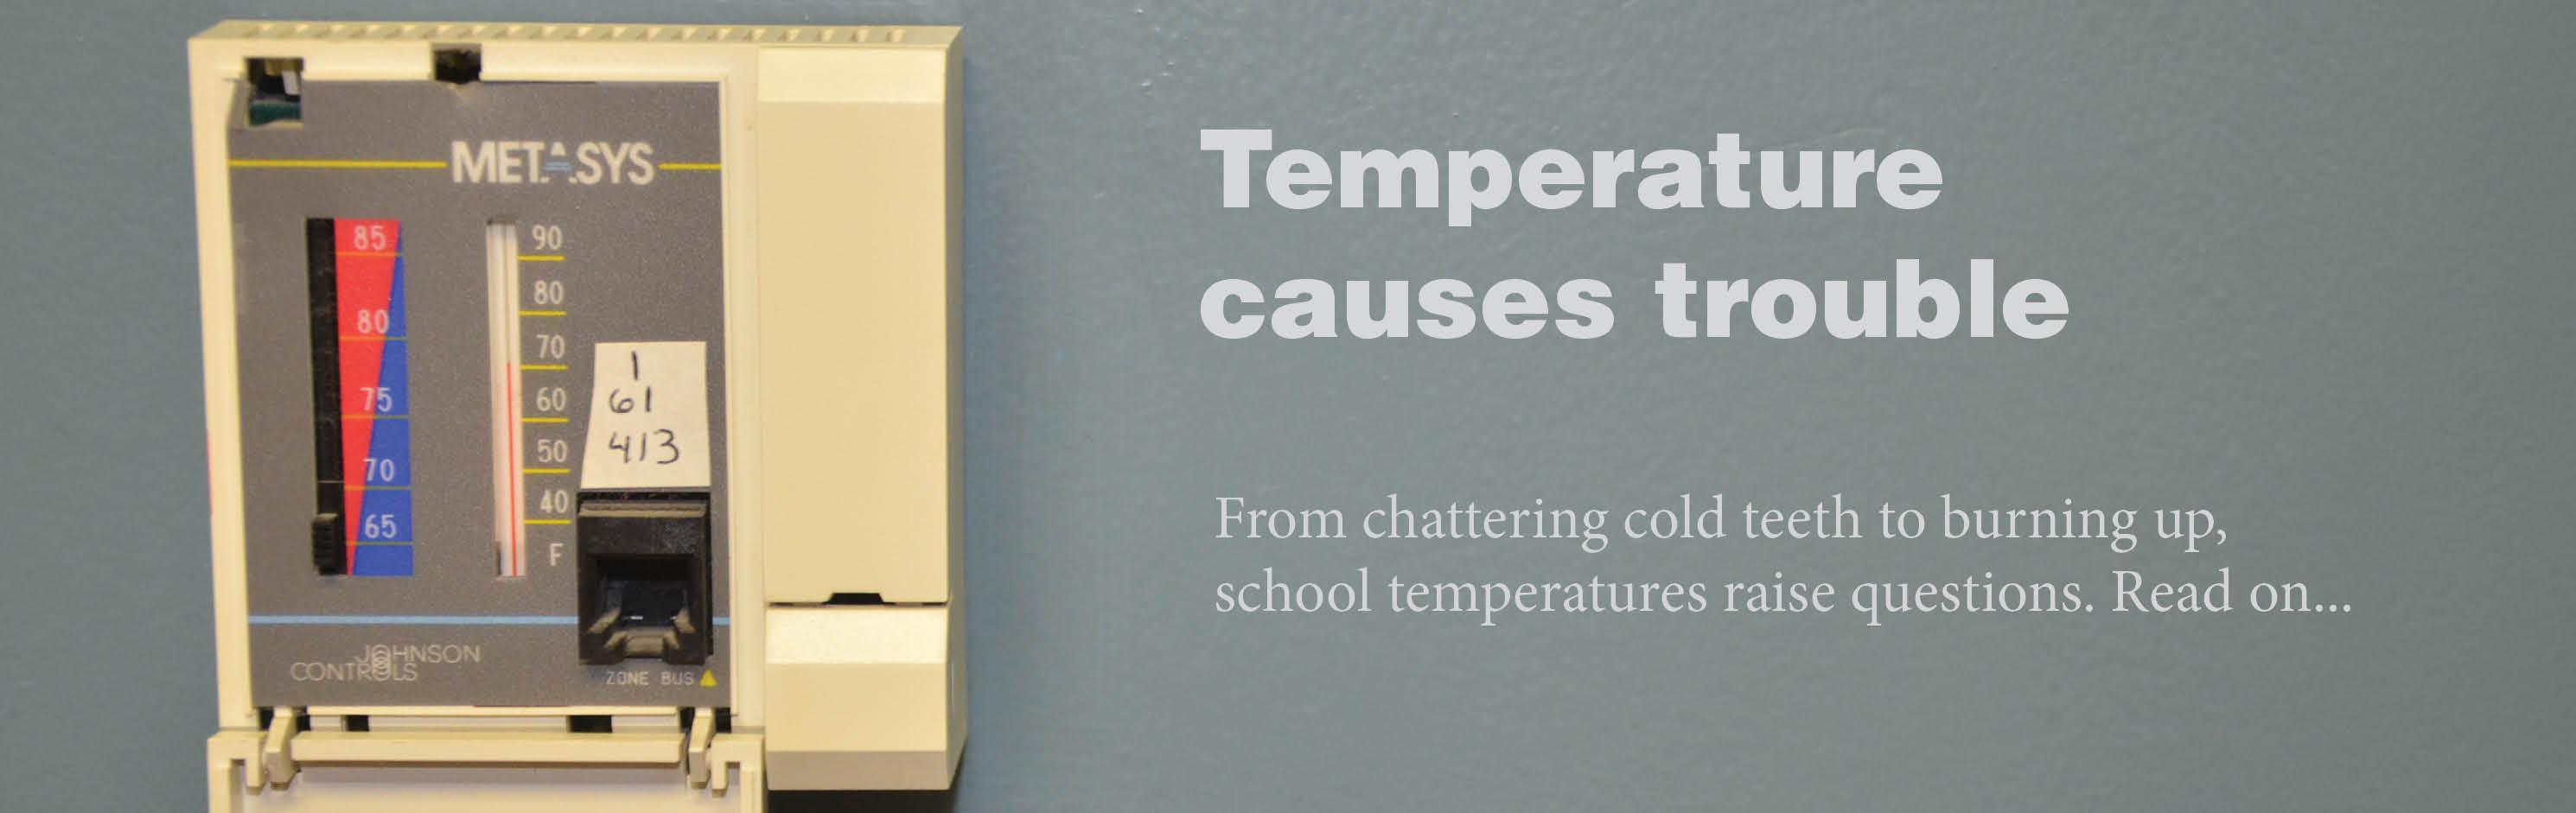 Temperature causes trouble